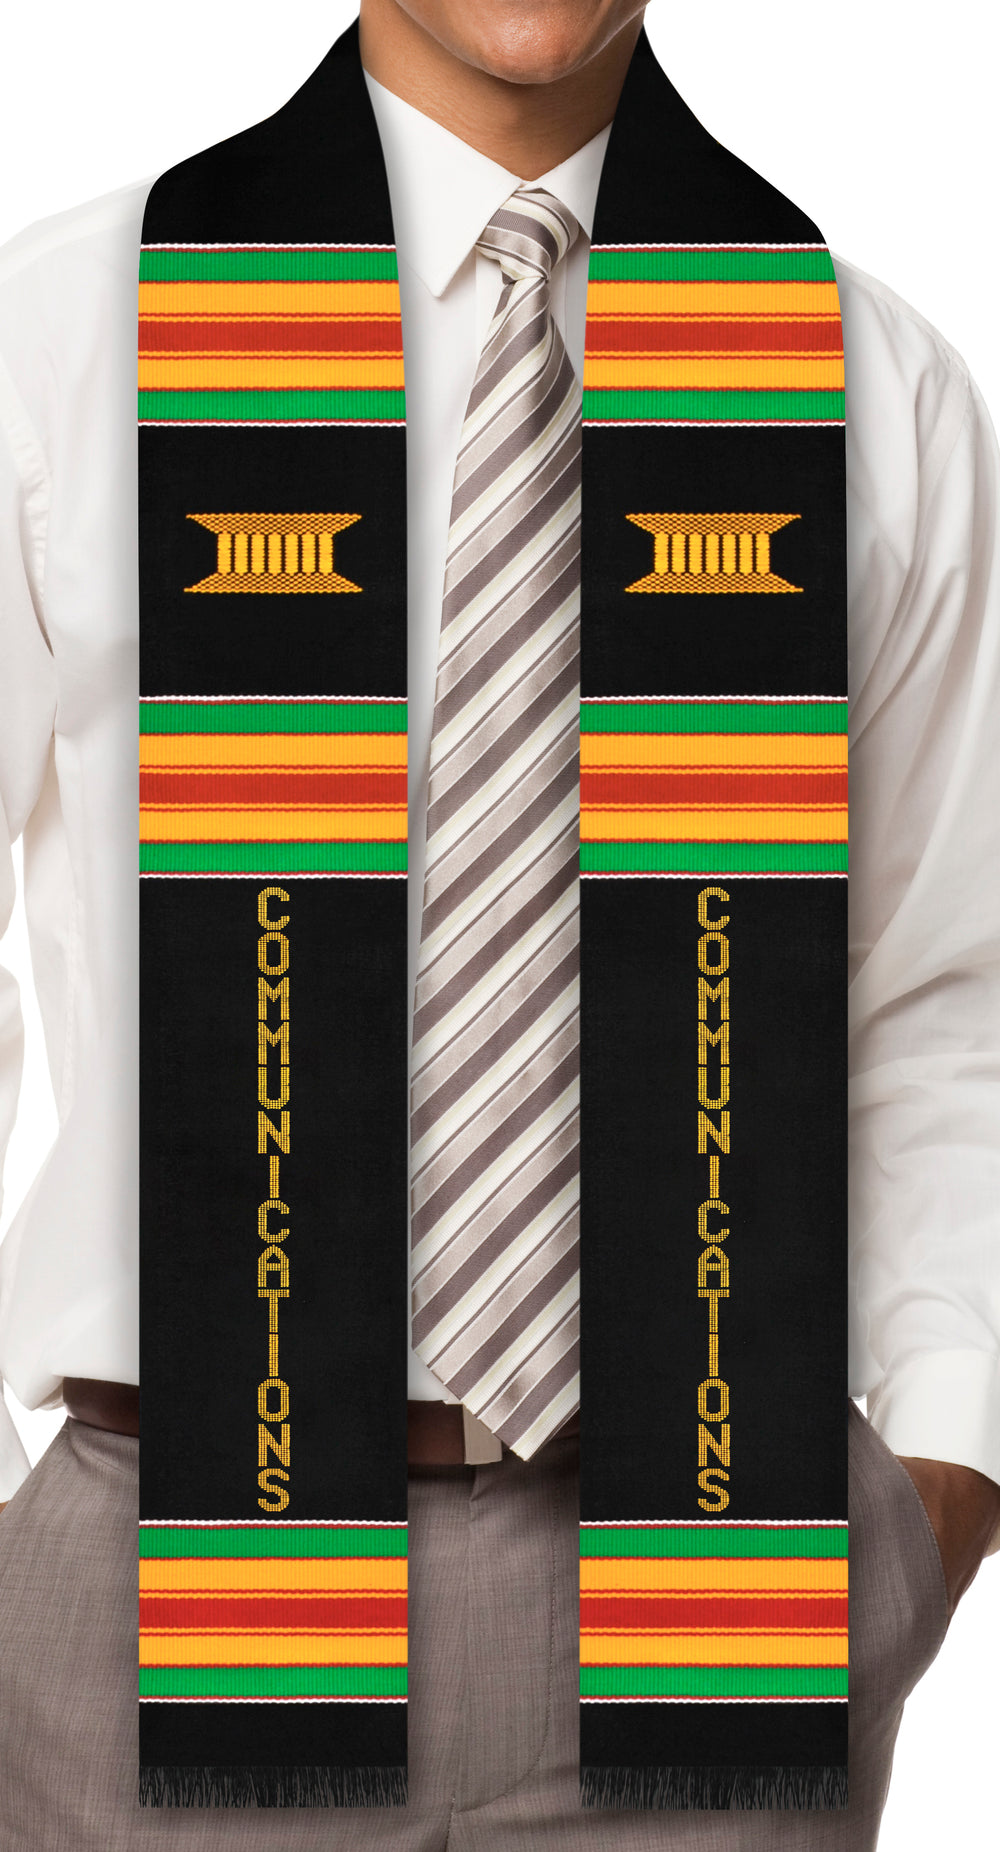 Communications Major Authentic Handwoven Kente Cloth Graduation Stole